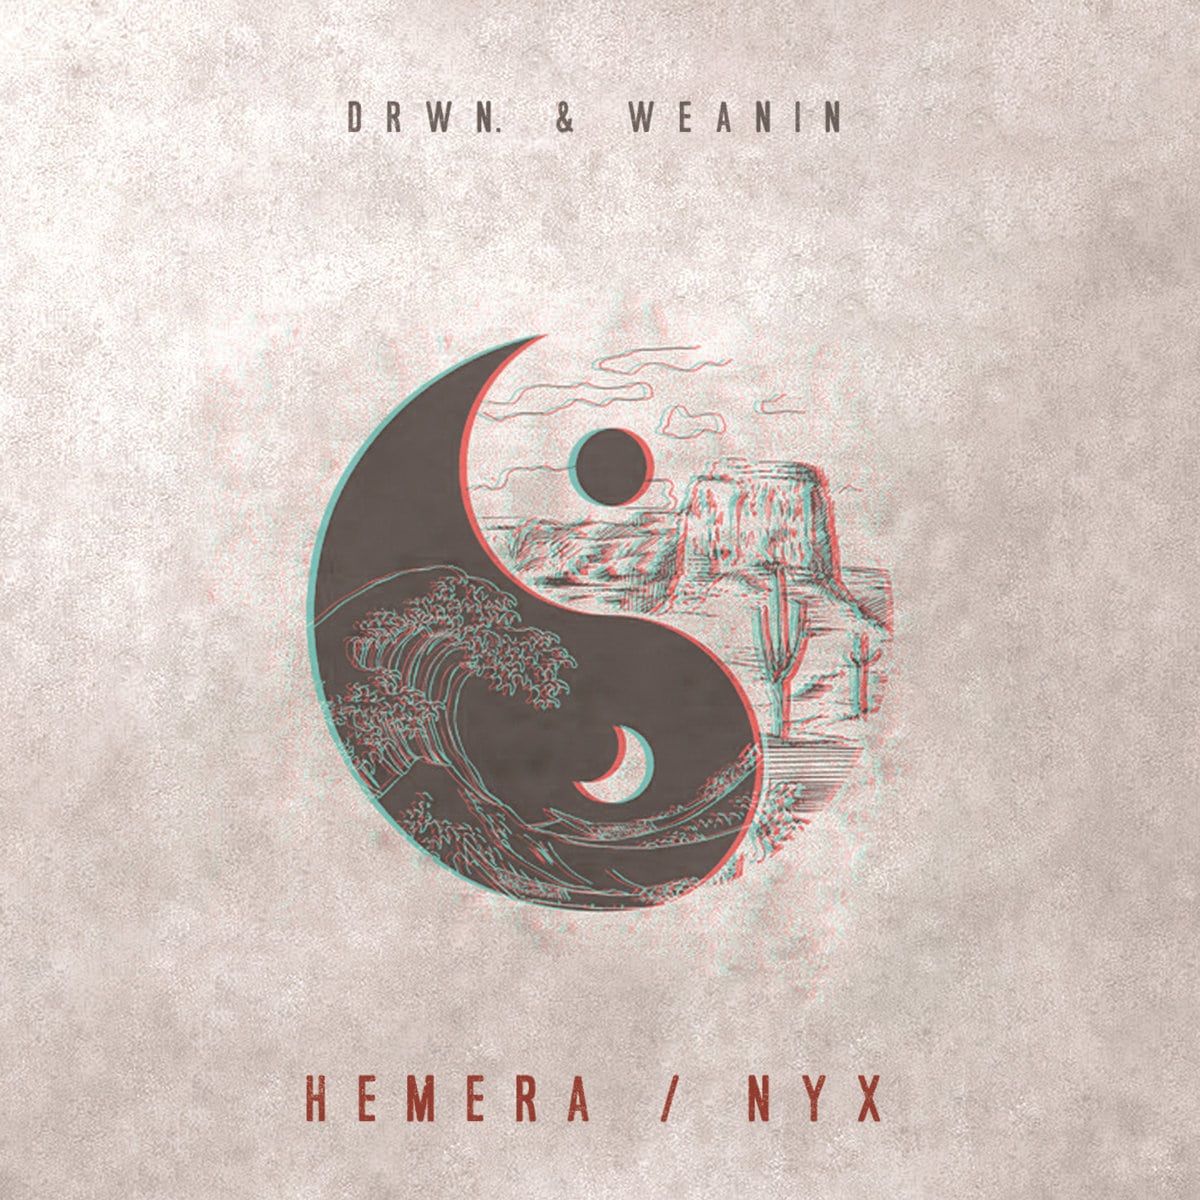 nyx and hemera